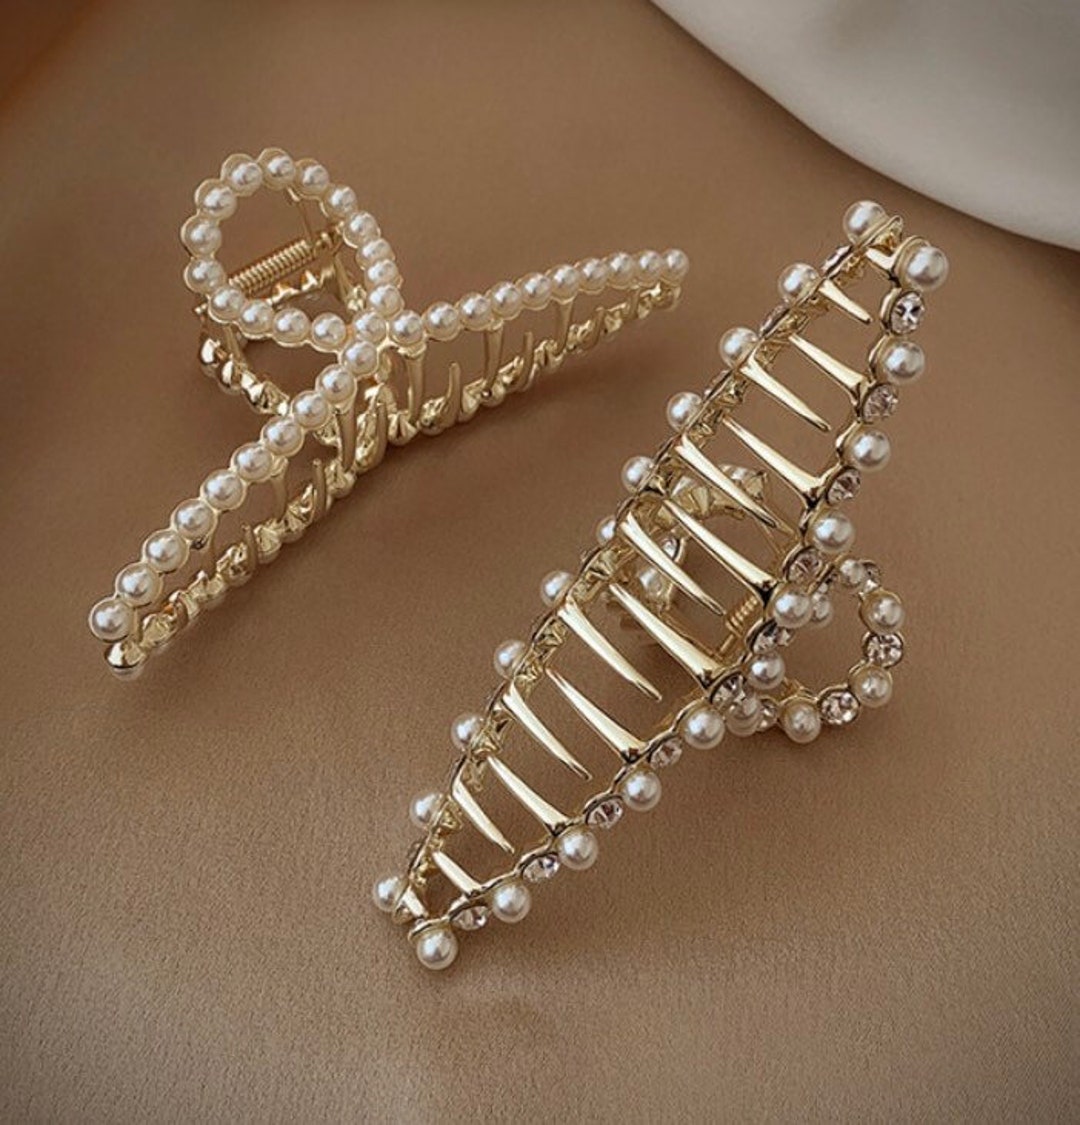 Big Pearls Beads Ends Golden Metal Hair Sticks For Women U Shape